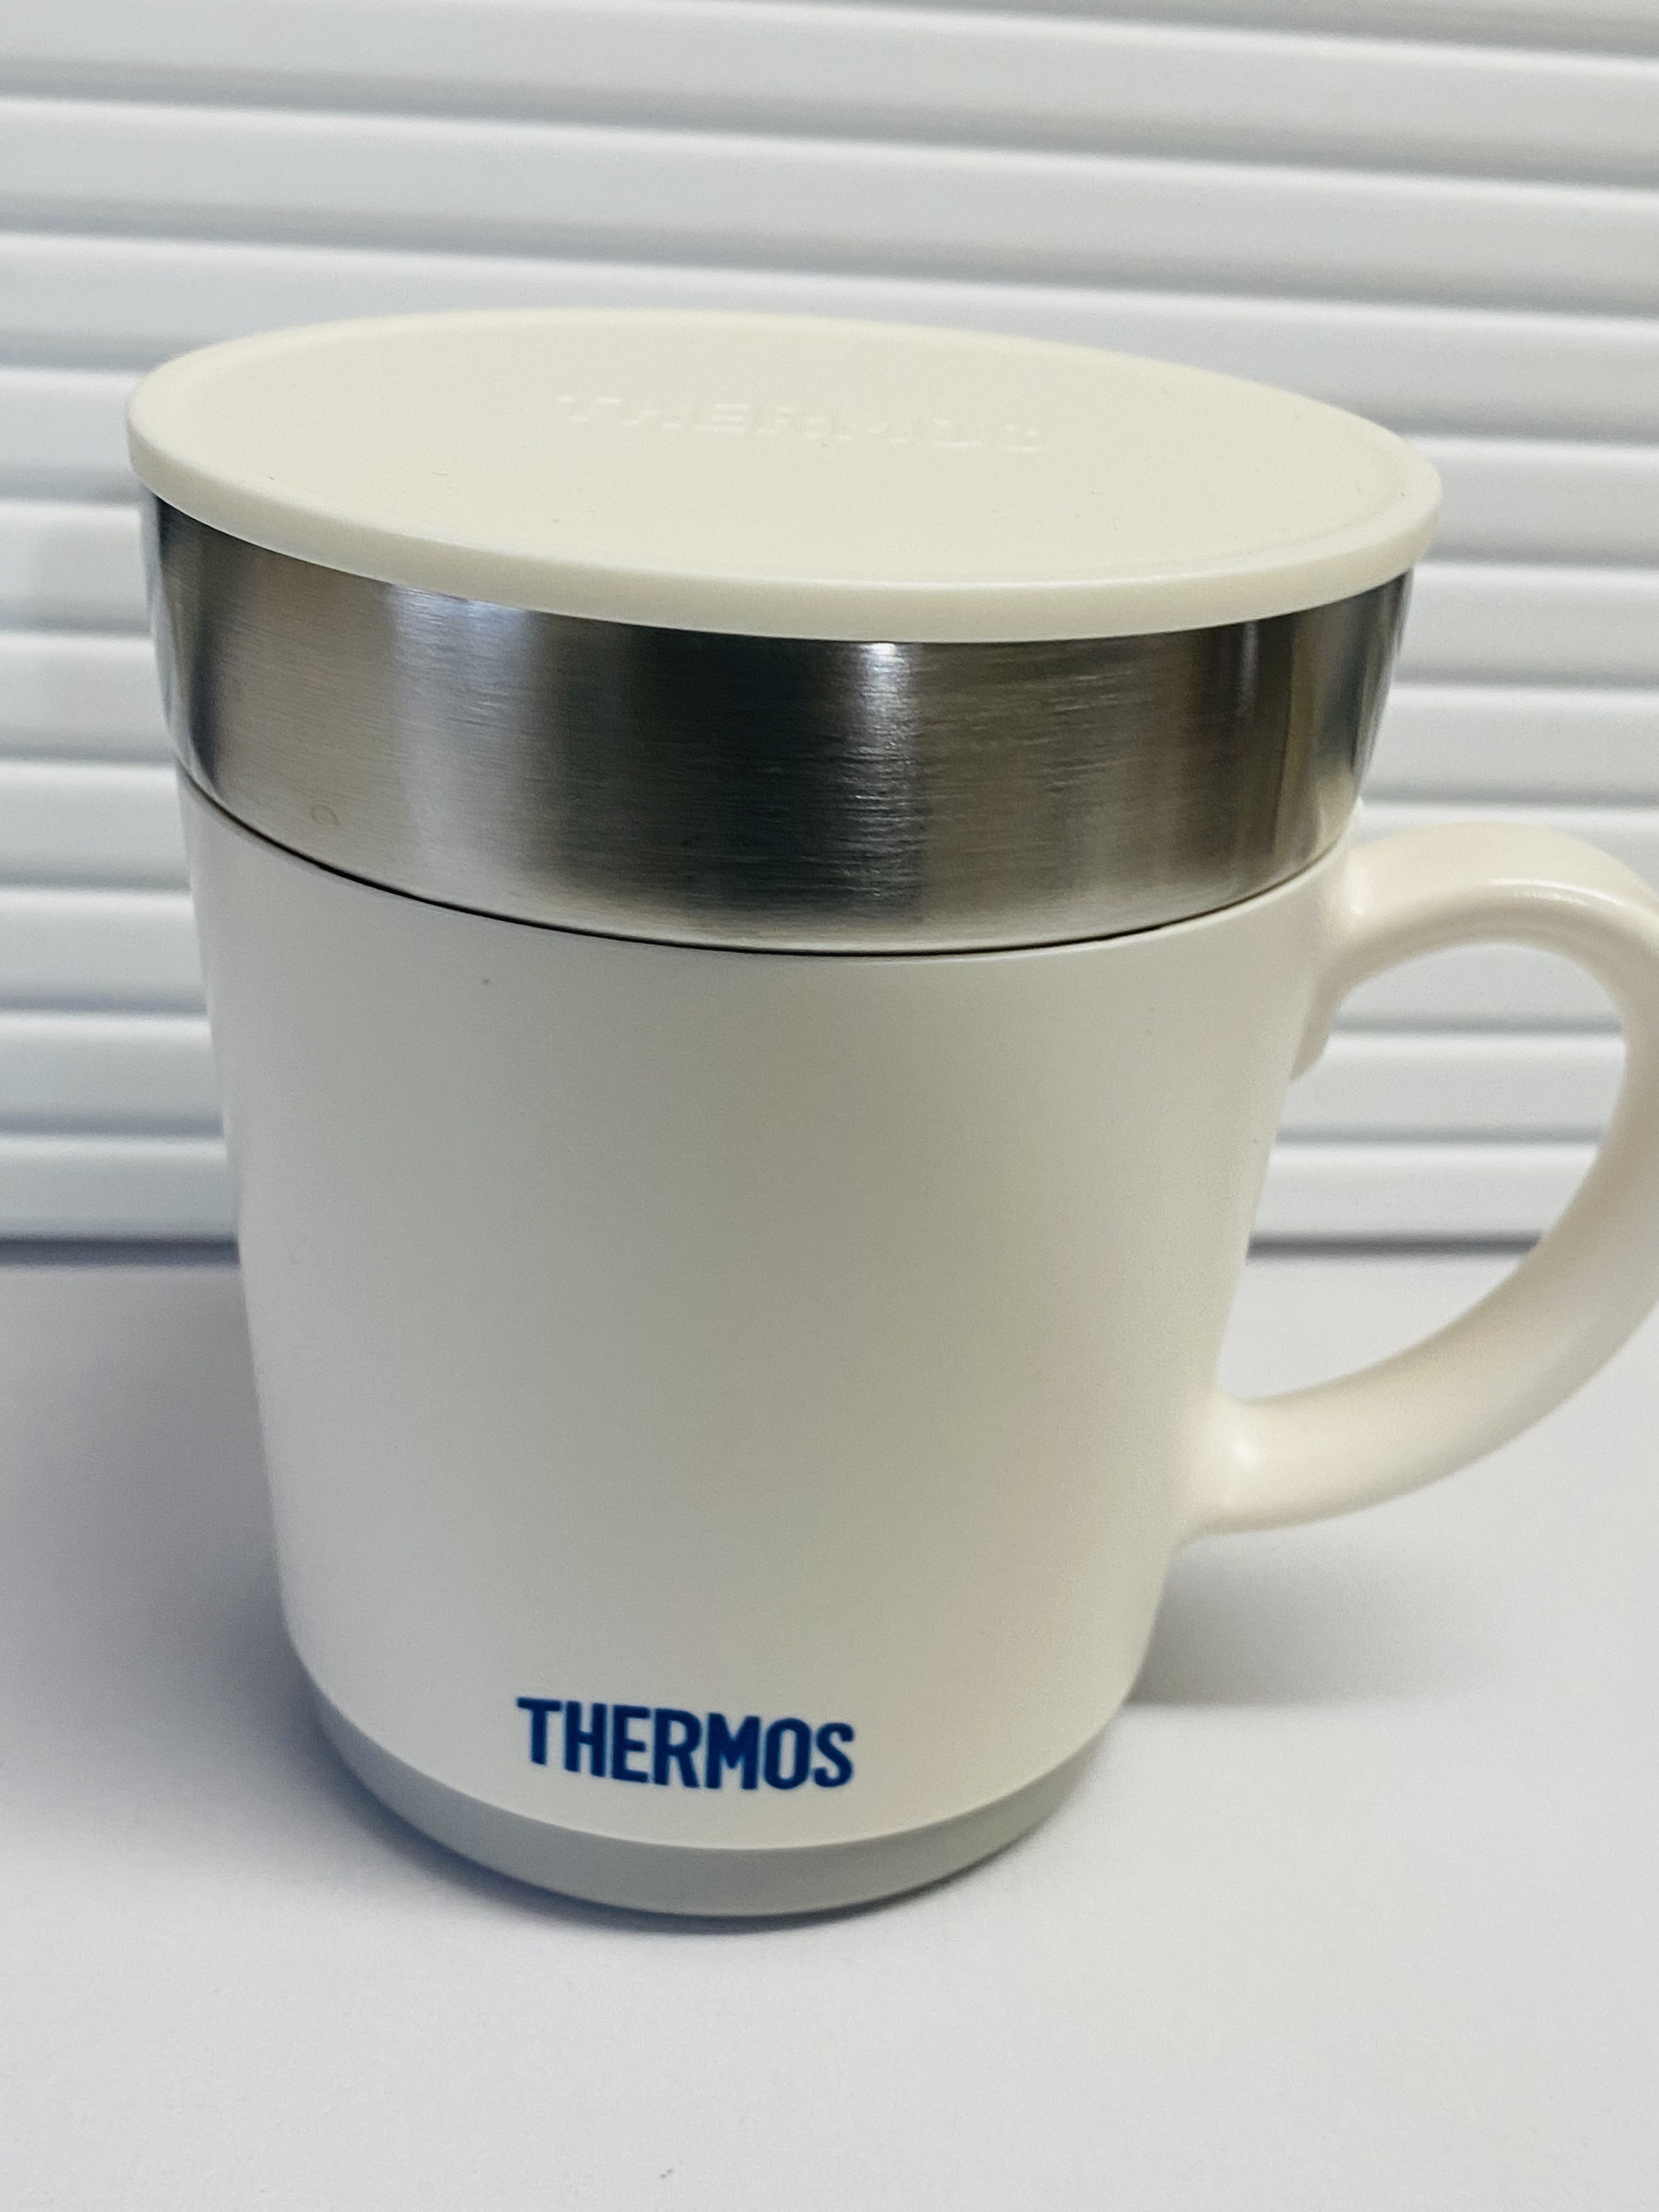 THERMOS(サーモス) 保温マグカップの良い点・メリットに関するCOPPYさんの口コミ画像1